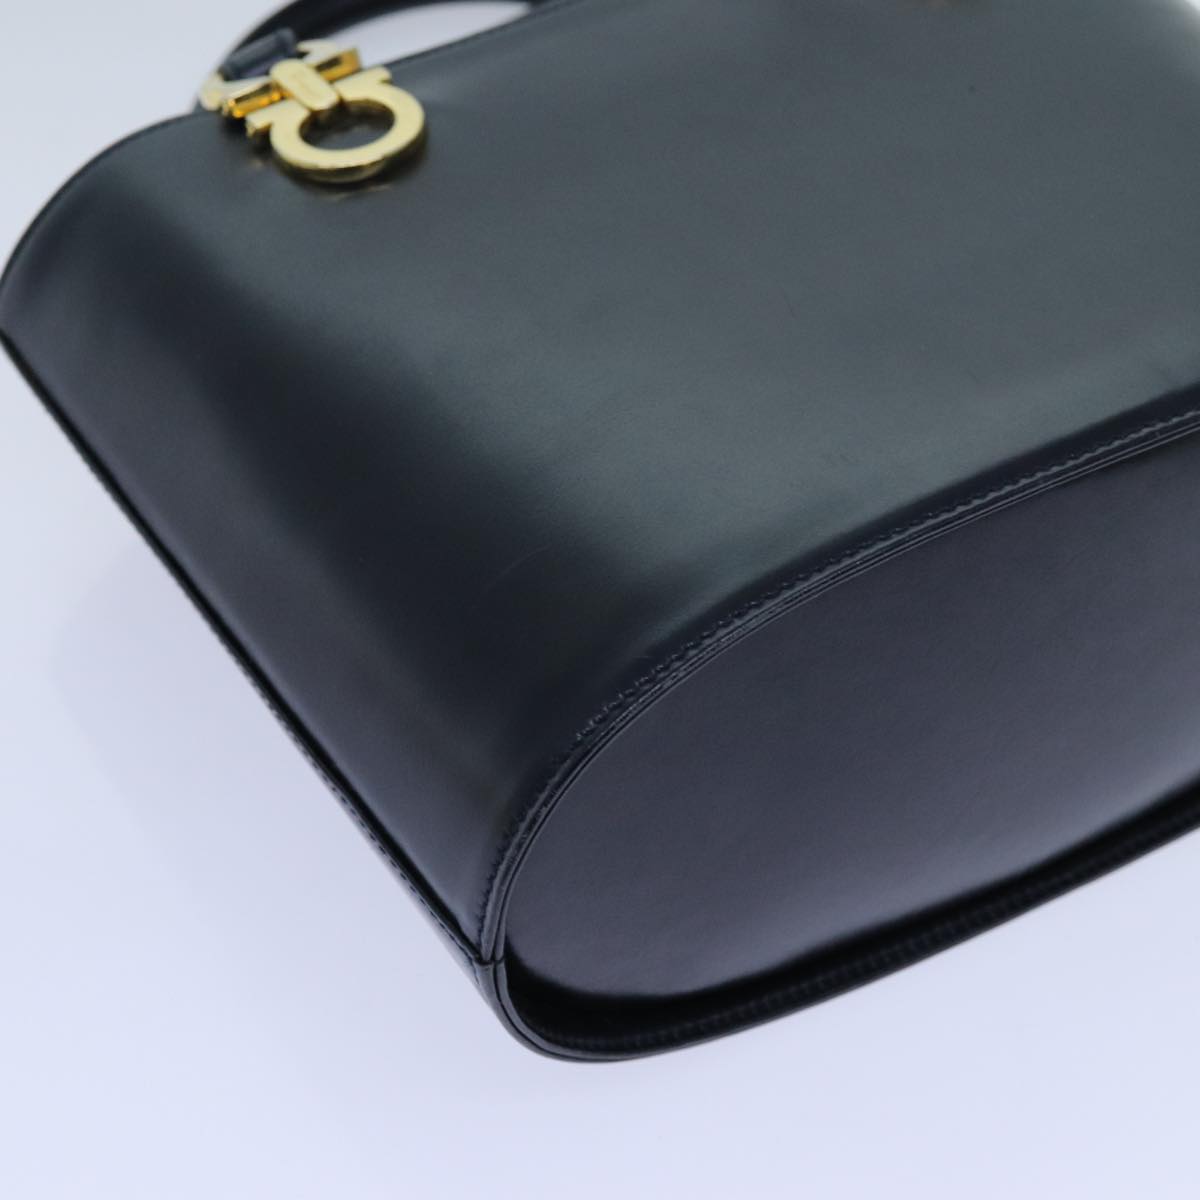 Salvatore Ferragamo Hand Bag Leather Black Auth 71581